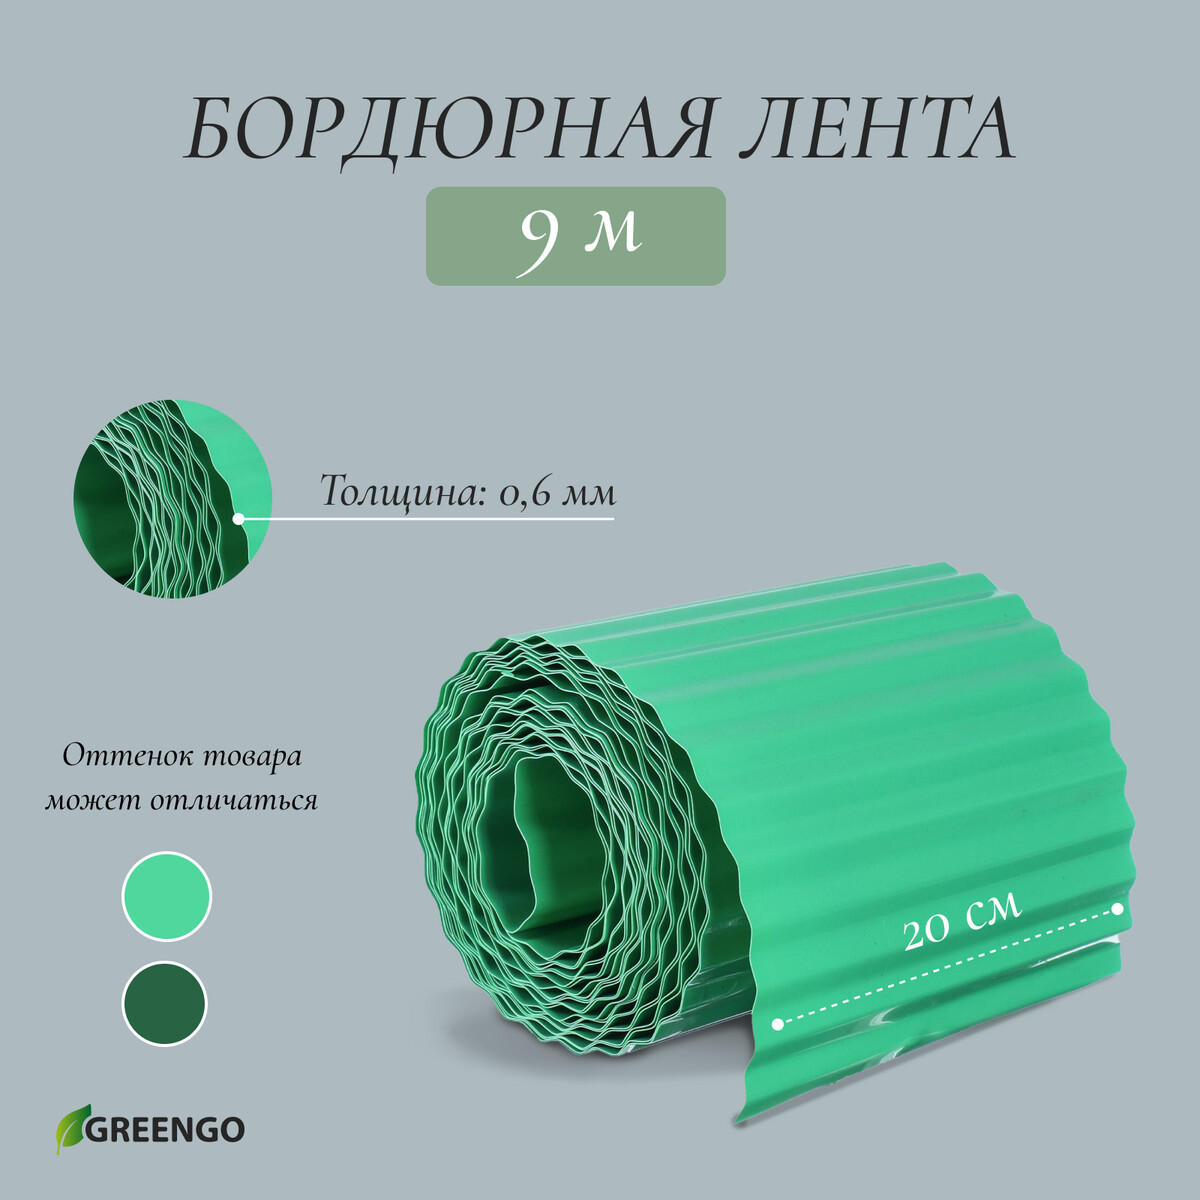 Лента бордюрная, 0.2 × 9 м, толщина 0.6 мм, пластиковая, гофра, зеленая, greengo лента бордюрная 0 1 × 9 м толщина 0 6 мм пластиковая зеленая